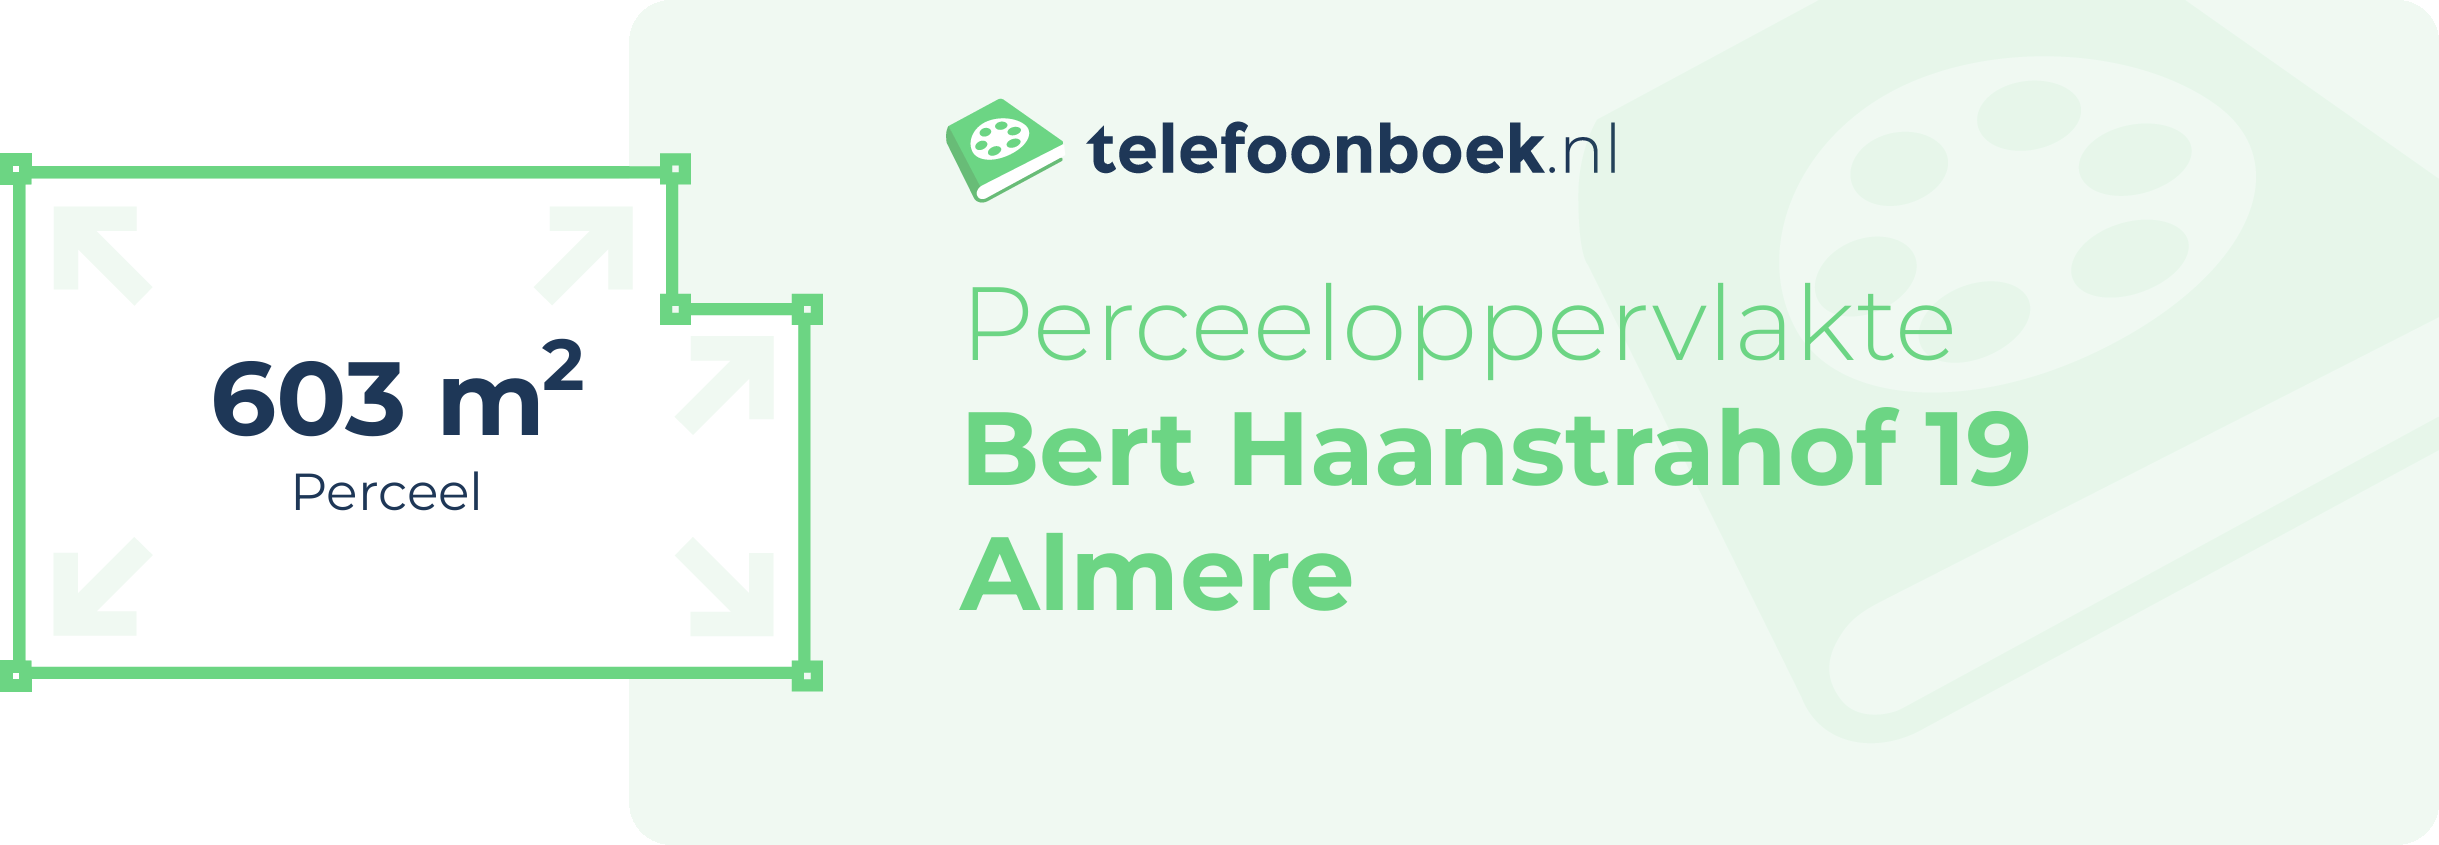 Perceeloppervlakte Bert Haanstrahof 19 Almere